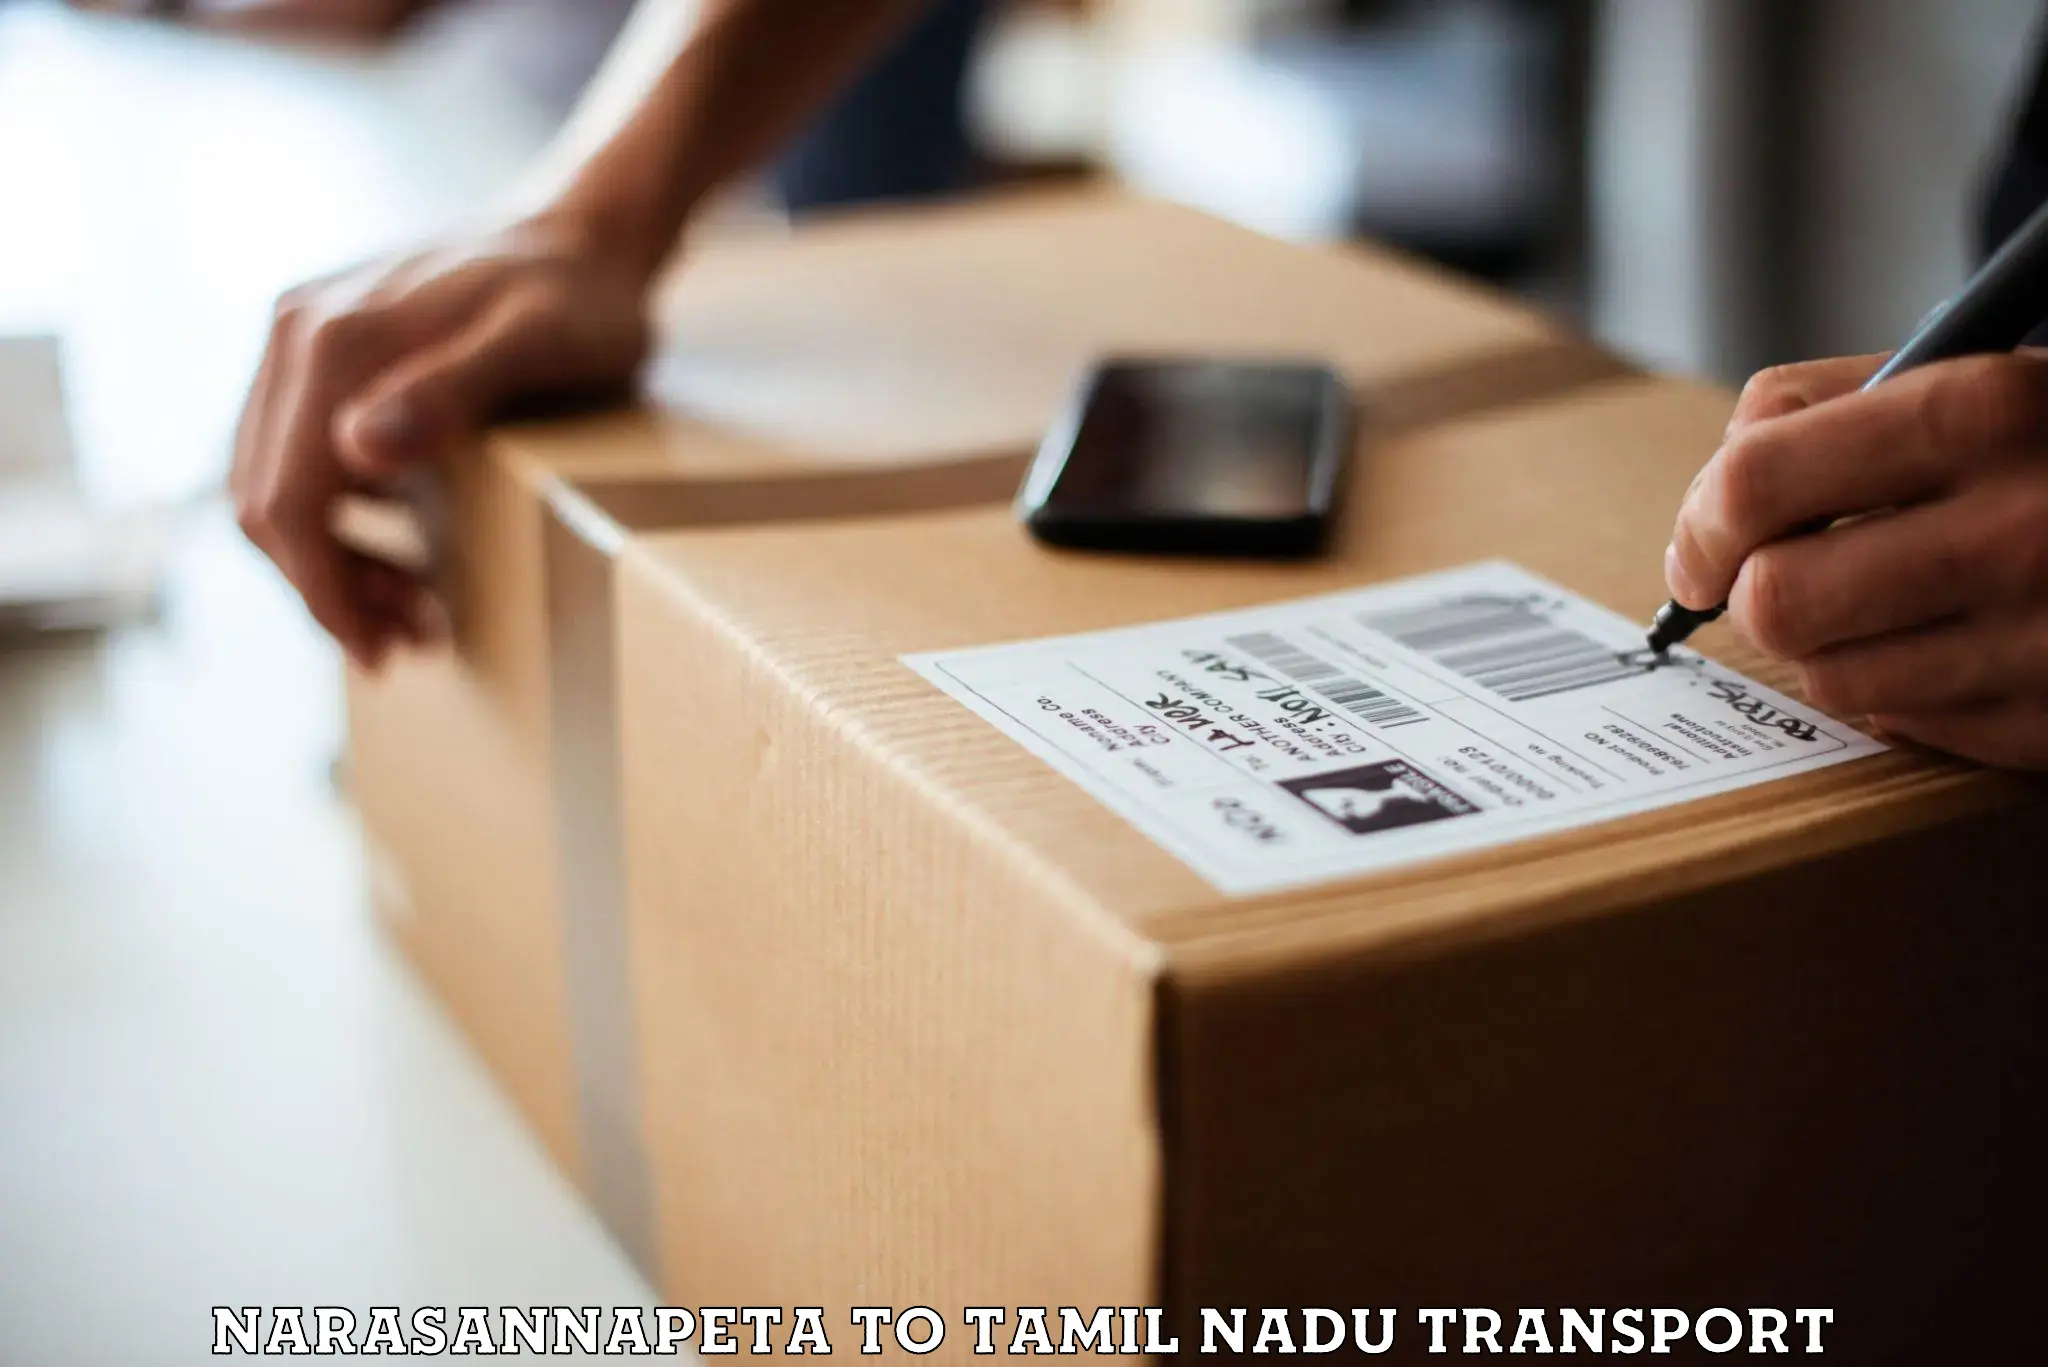 Furniture transport service Narasannapeta to Vellore